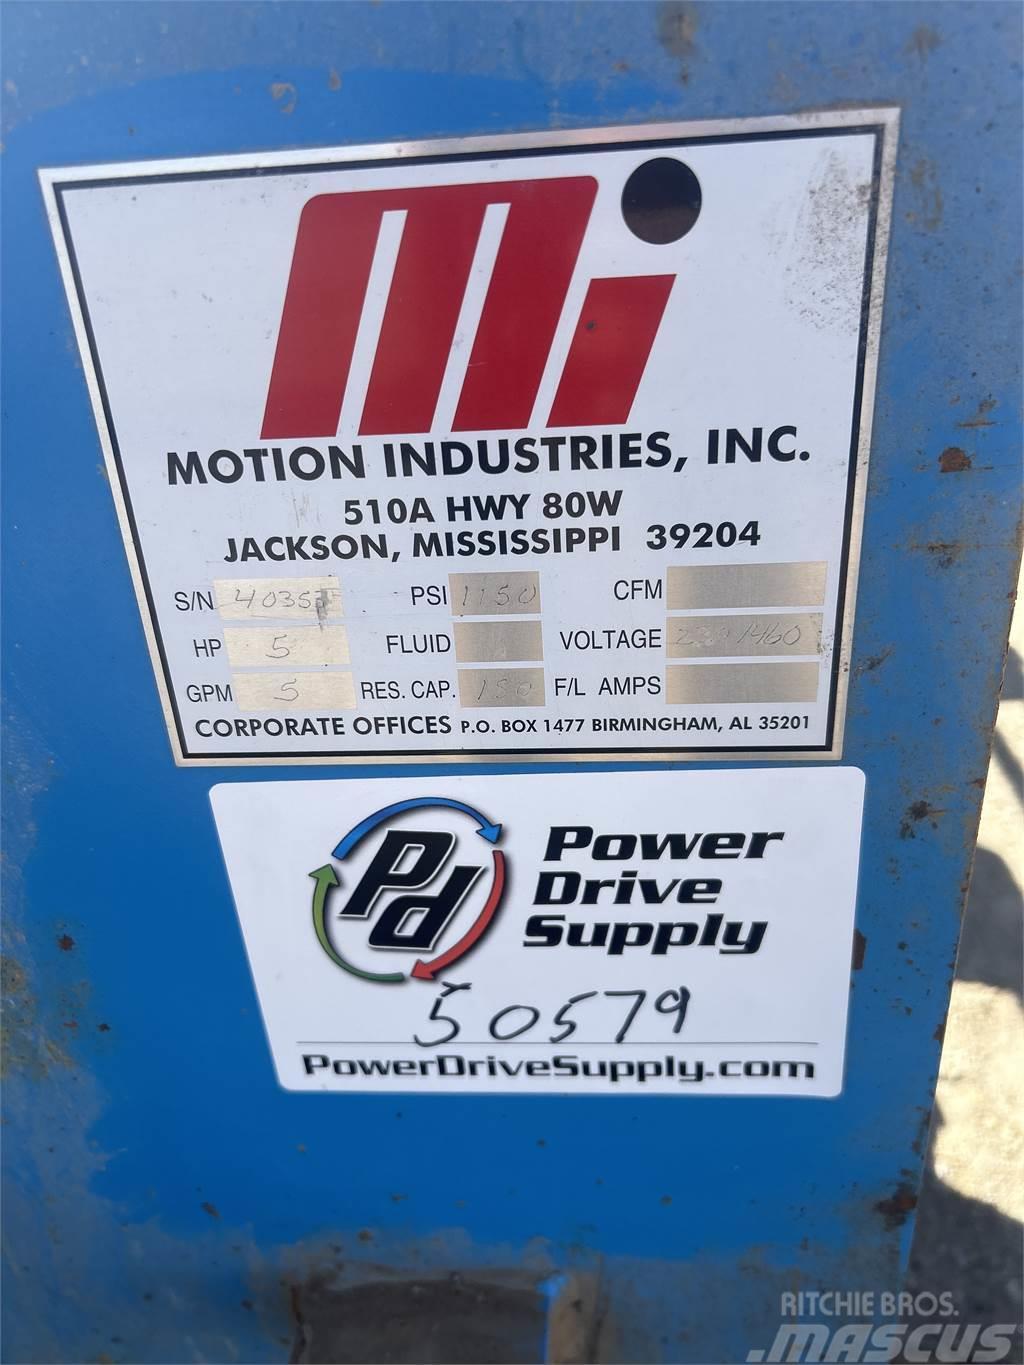  Motion industries Hydraulic Power Unit Outros equipamentos perfuração